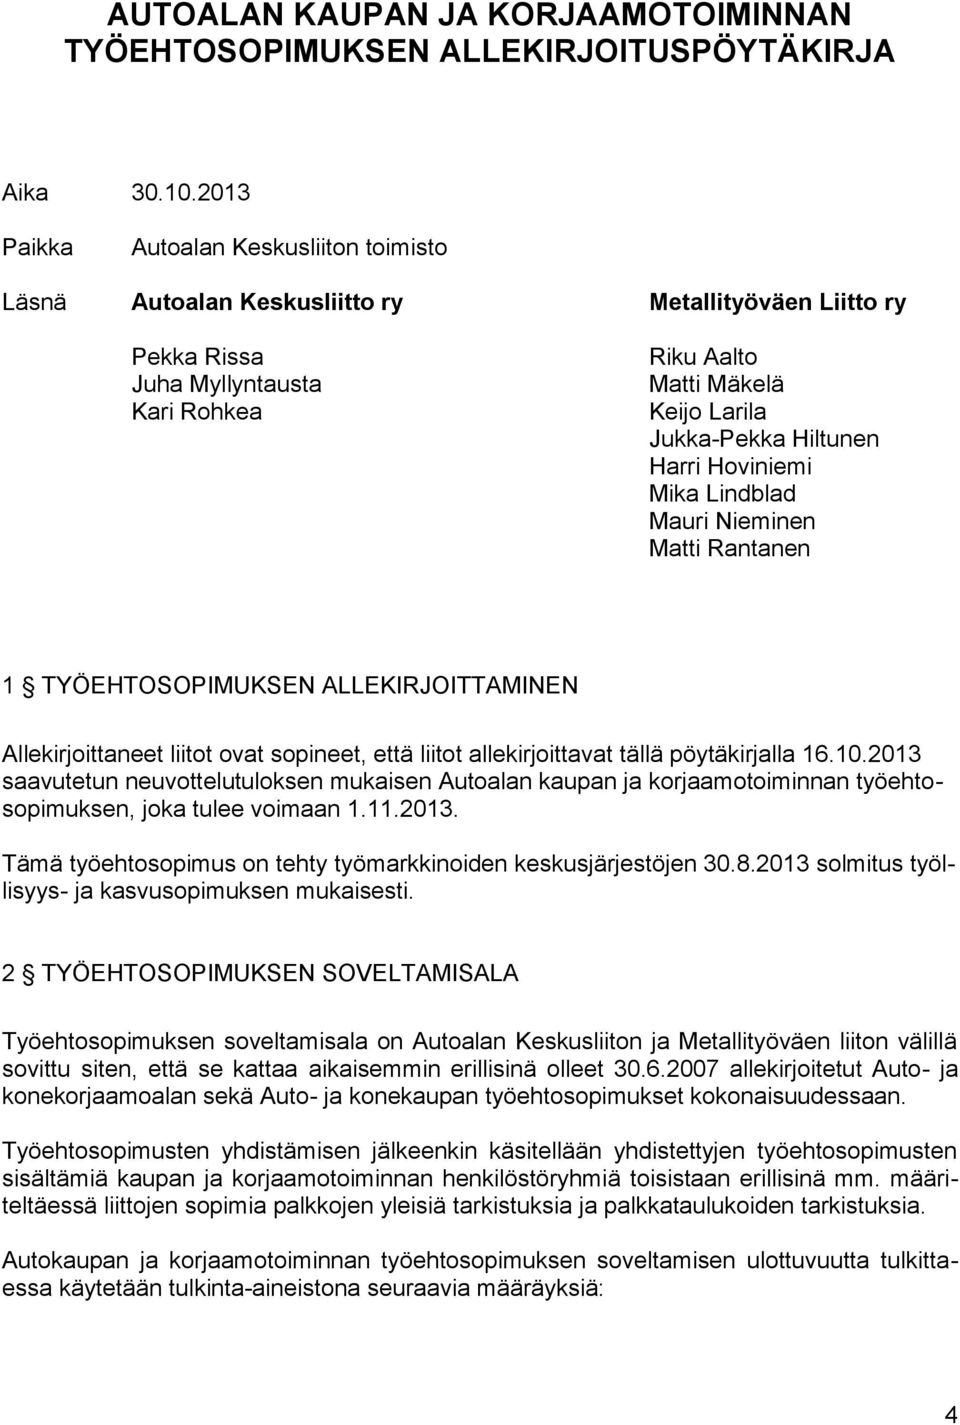 Harri Hoviniemi Mika Lindblad Mauri Nieminen Matti Rantanen 1 TYÖEHTOSOPIMUKSEN ALLEKIRJOITTAMINEN Allekirjoittaneet liitot ovat sopineet, että liitot allekirjoittavat tällä pöytäkirjalla 16.10.